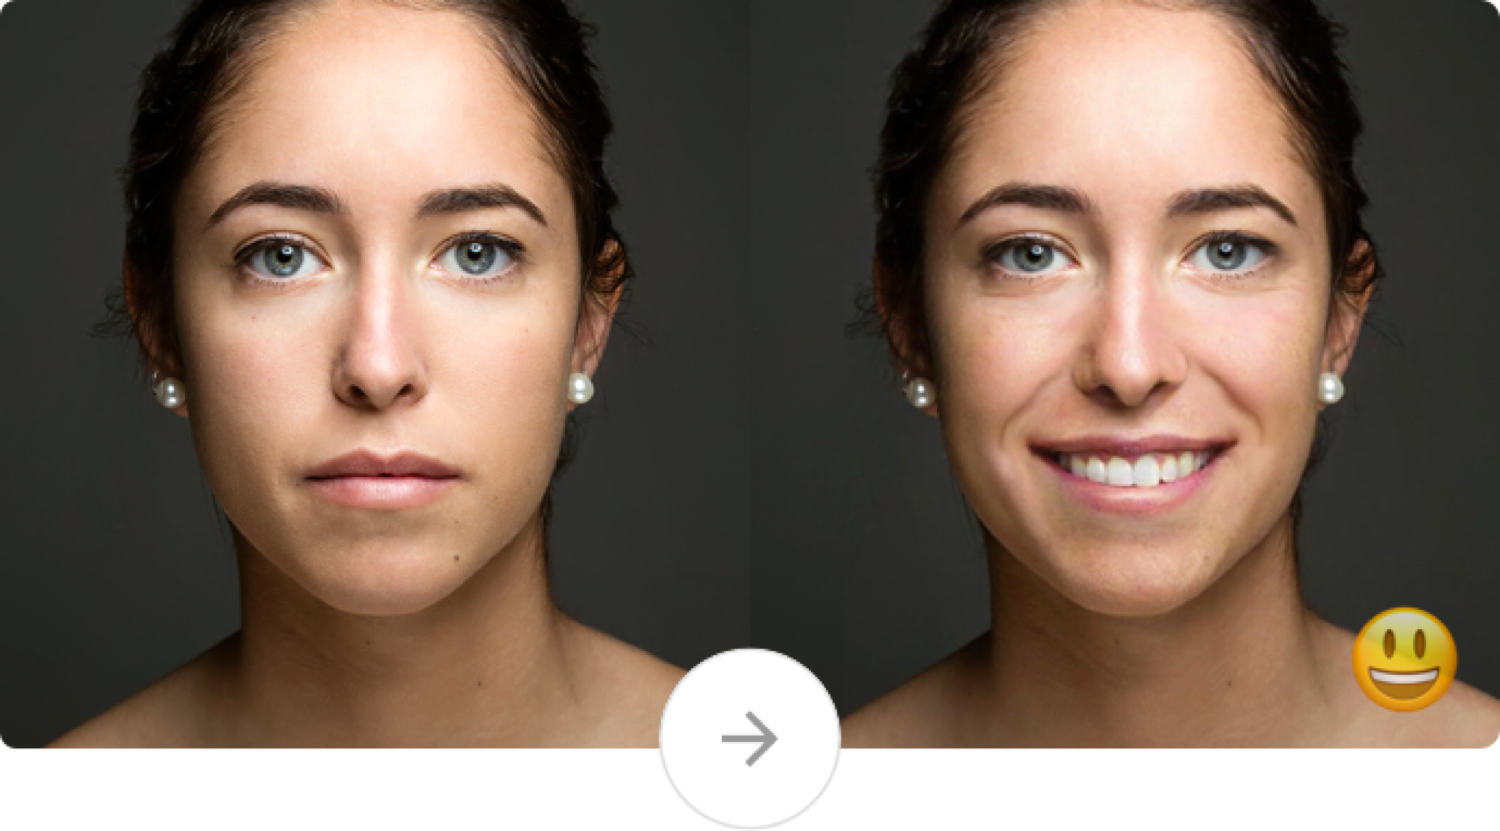 Трансформация лица. Фильтры которые меняют лицо. Изменения фото. Морщинистые лица в анфас.